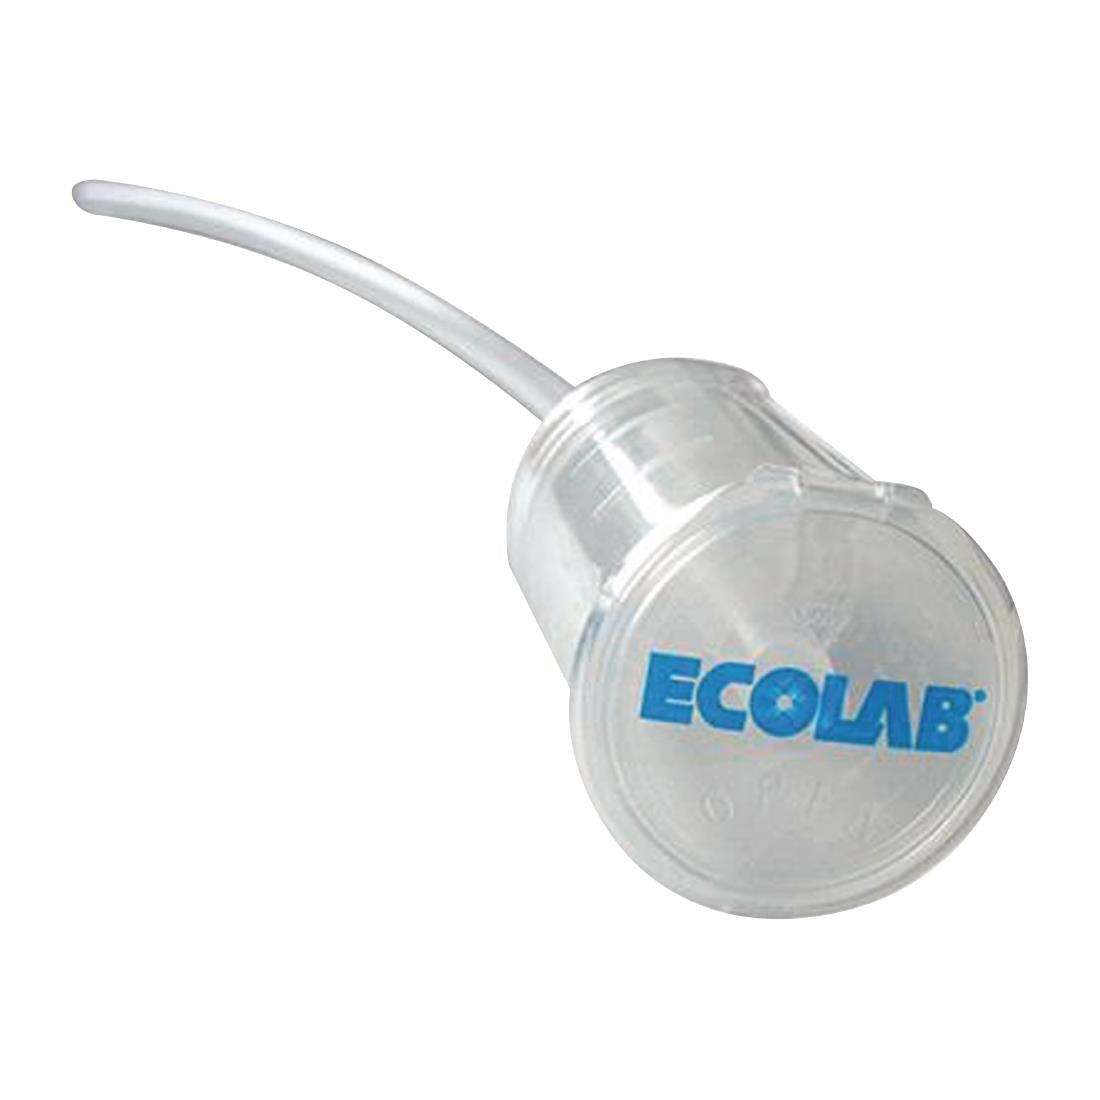 FC435 Ecolab Pelican Pump Dispenser 40mm Cap JD Catering Equipment Solutions Ltd